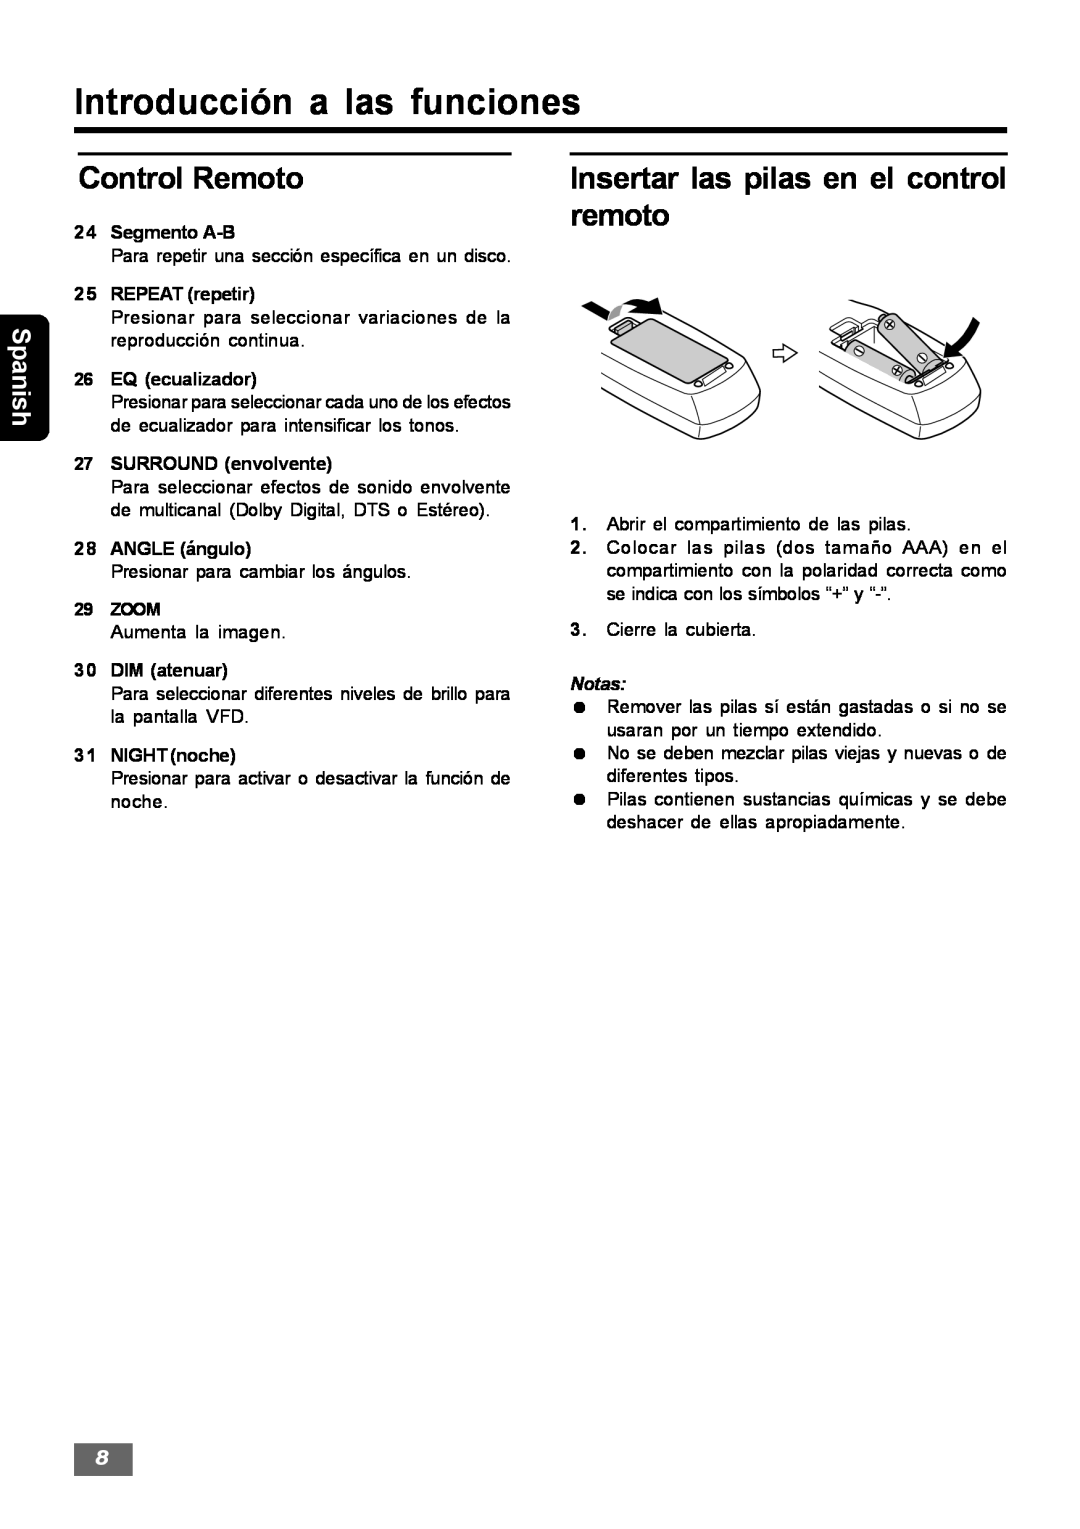 Insignia IS-HTIB102731 Insertar las pilas en el control remoto, Introducción a las funciones, Control Remoto, Spanish 